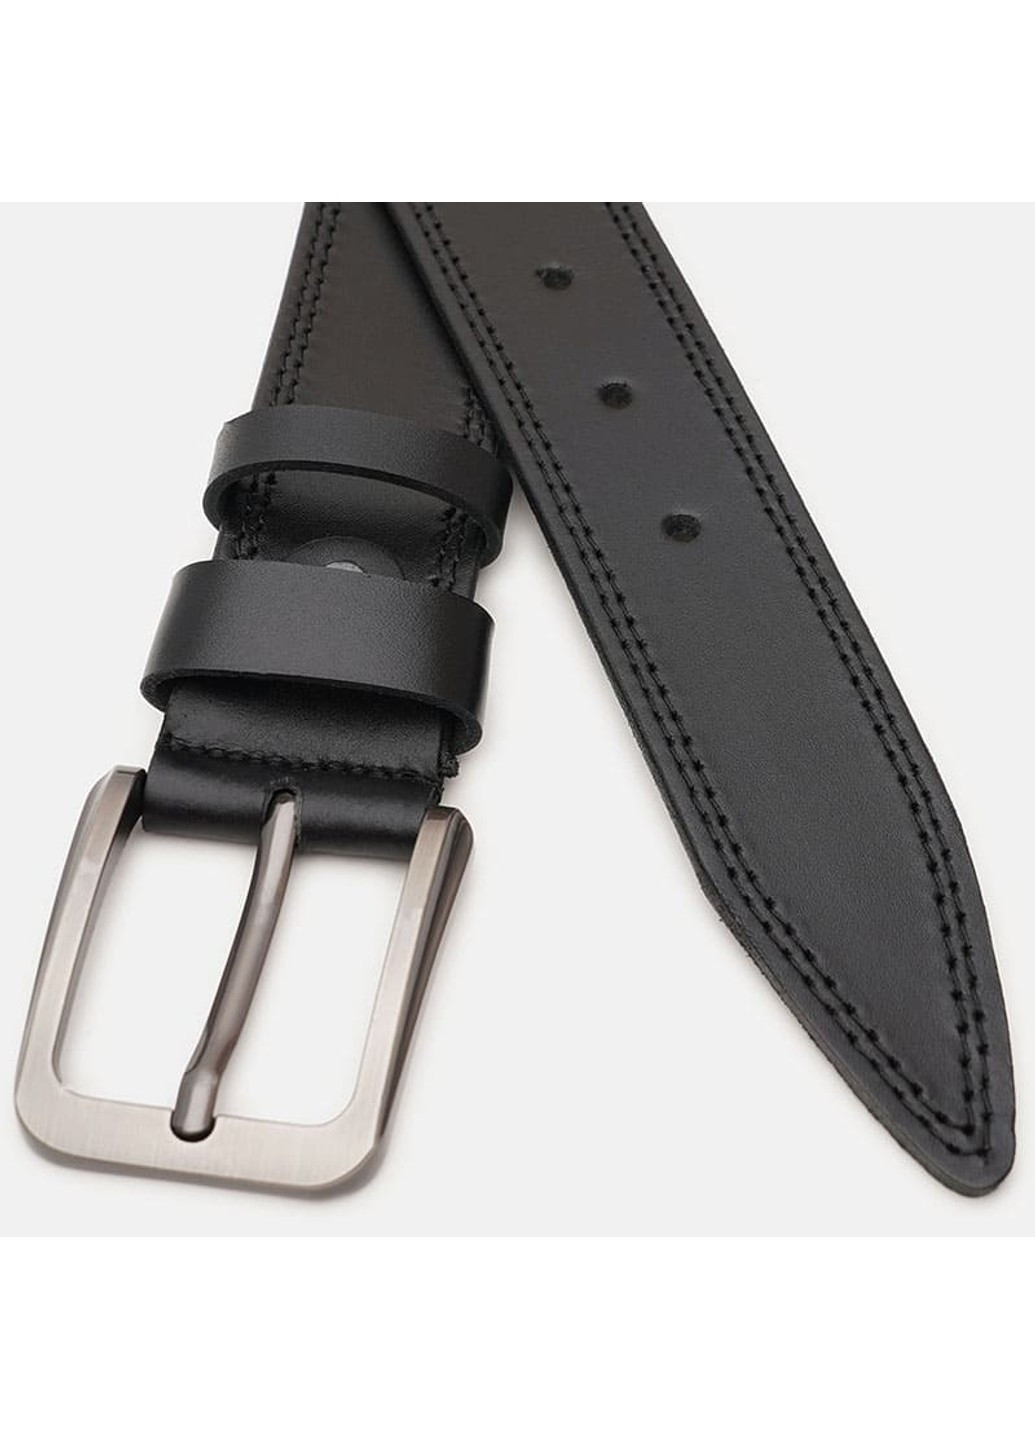 Мужской кожаный ремень V1115FX16-black Borsa Leather (266143962)